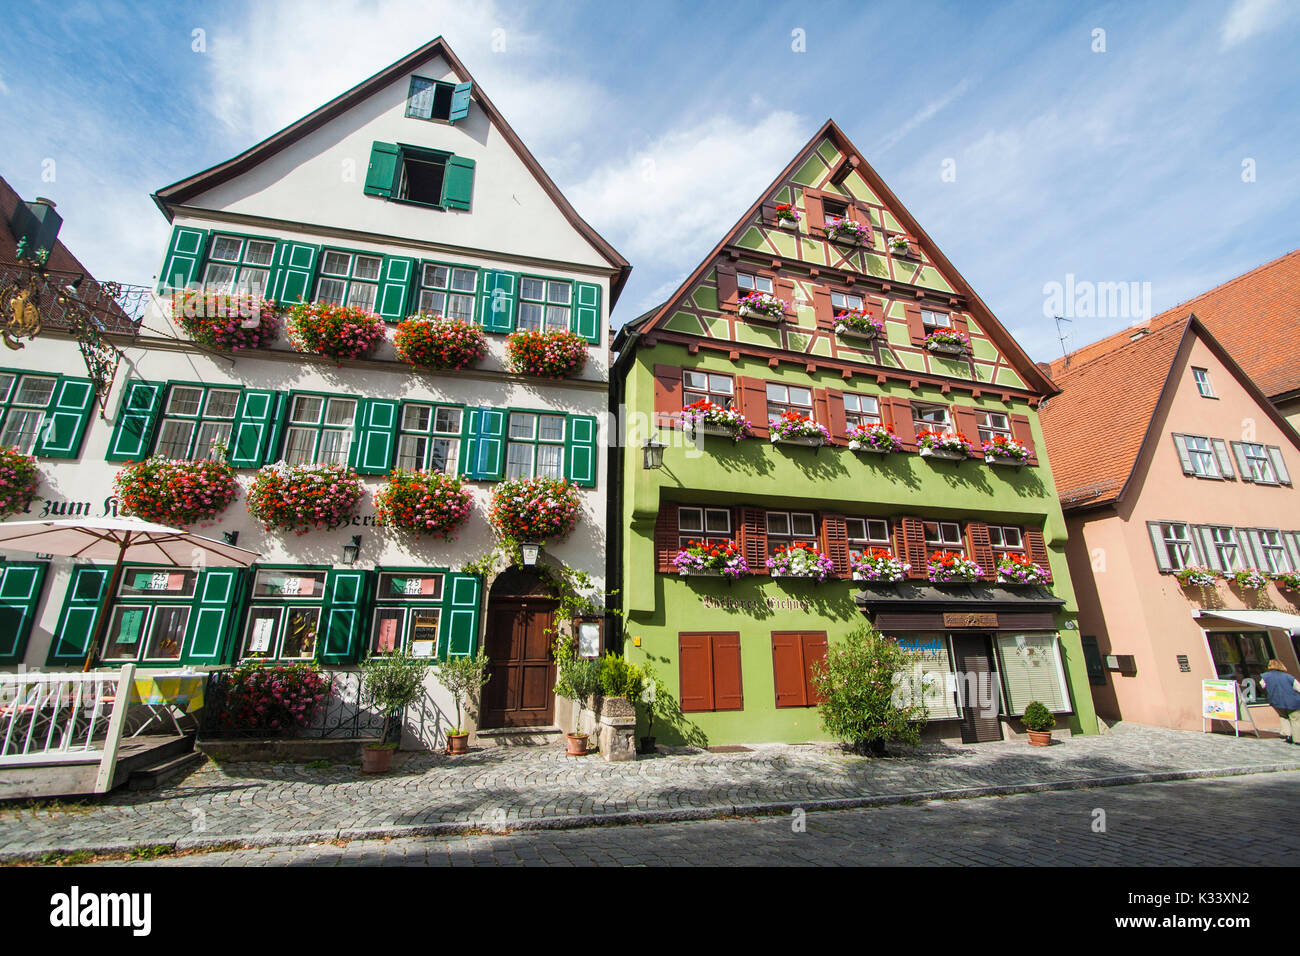 Bunte Häuser und Blumen Nördlingen Bayern Süddeutschland Europa  Stockfotografie - Alamy